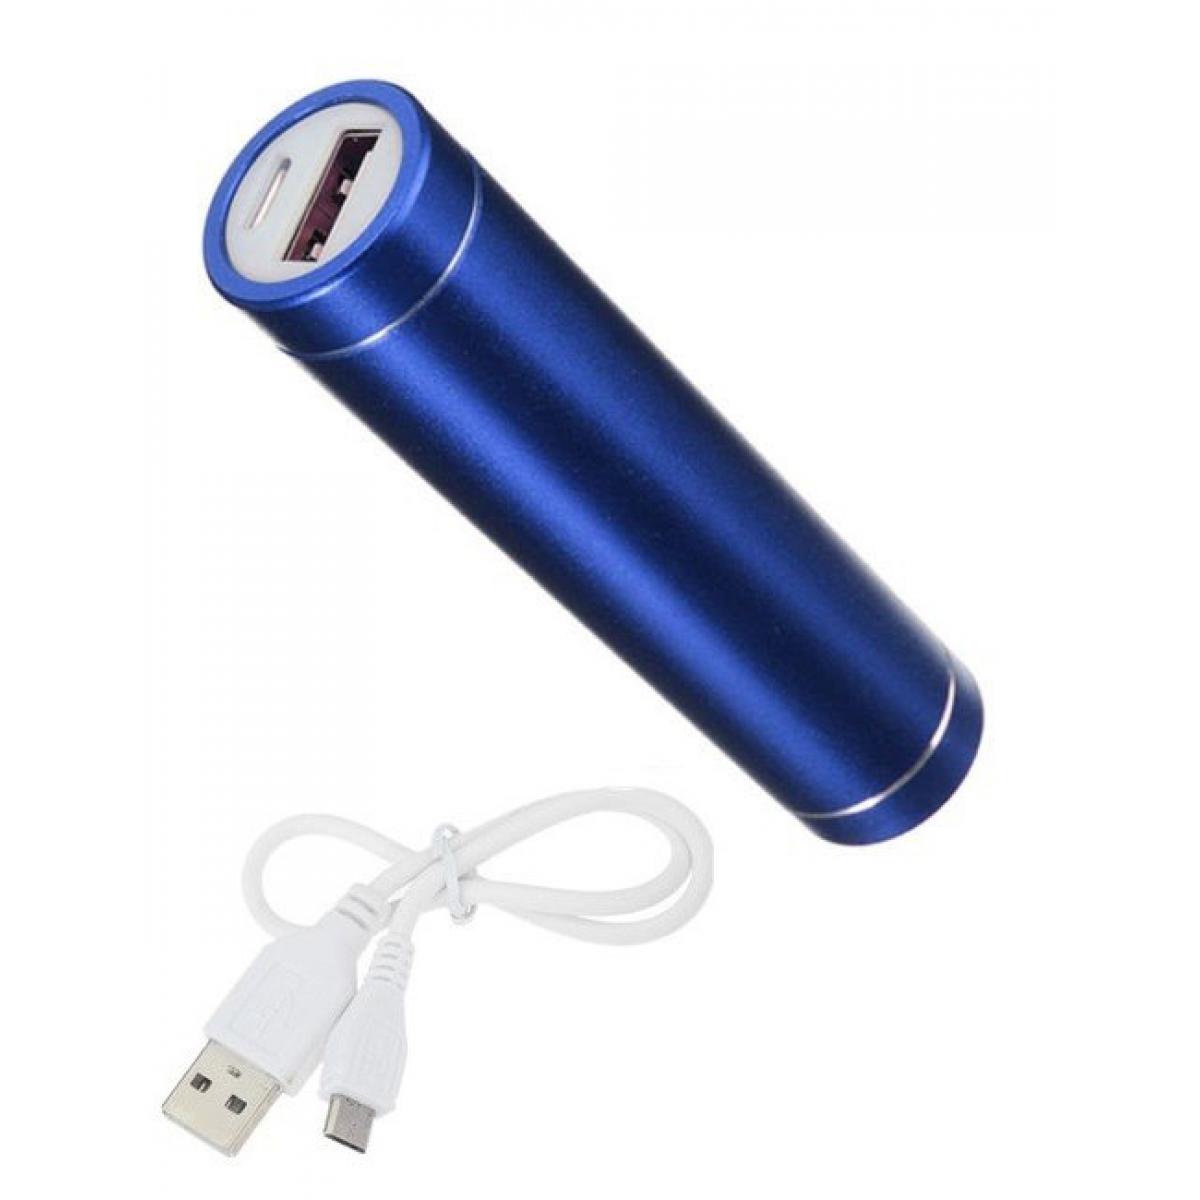 Shot - Batterie Chargeur Externe pour HUAWEI P30 lite XL Power Bank 2600mAh avec Cable USB/Mirco USB Secours Telephone (BLEU) - Chargeur secteur téléphone